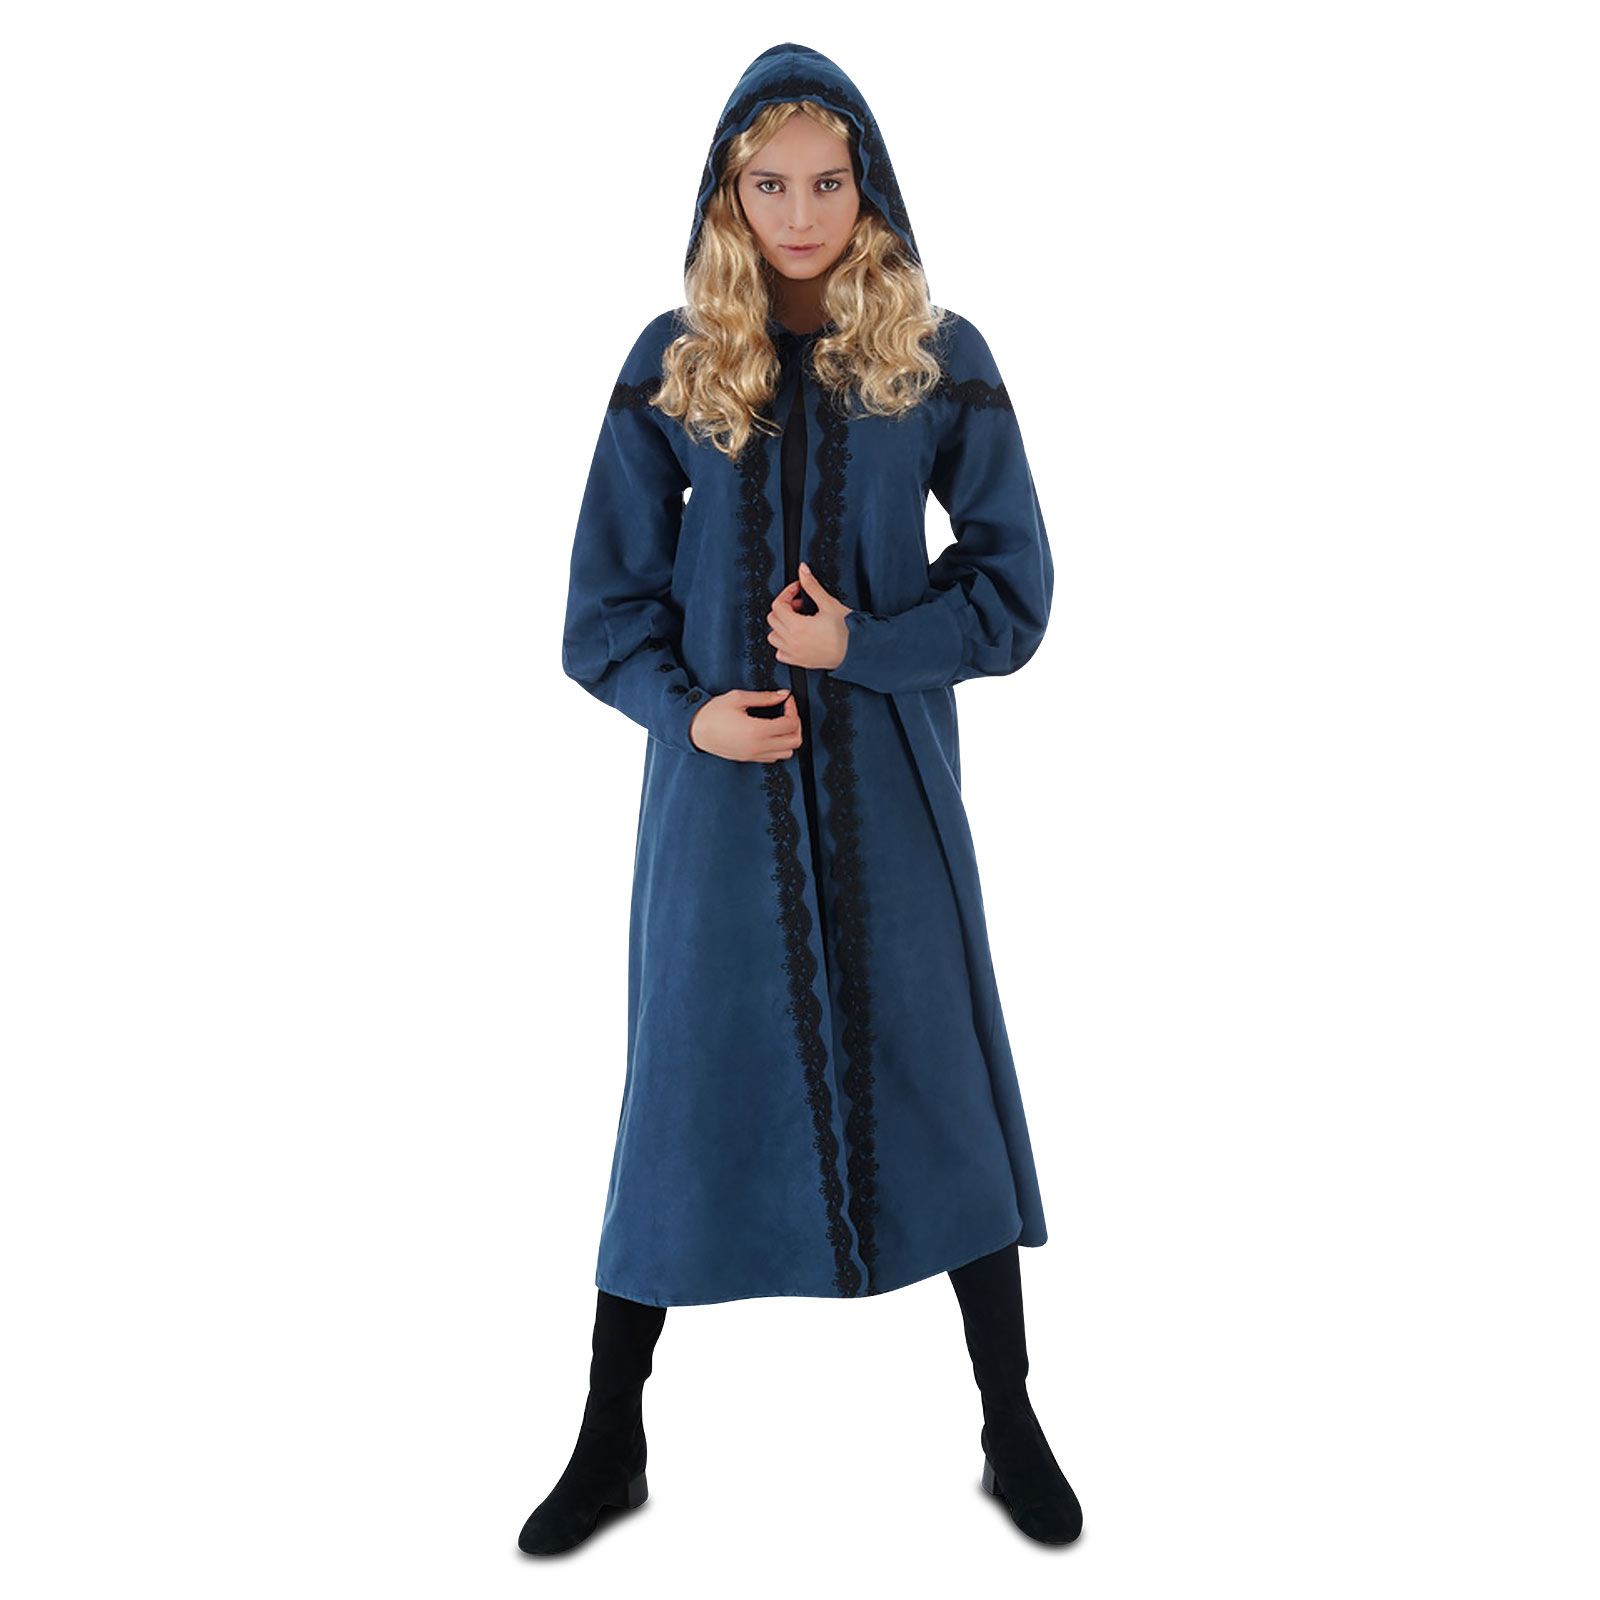 Ciri Kostüm Mantel Damen für Witcher Fans blau